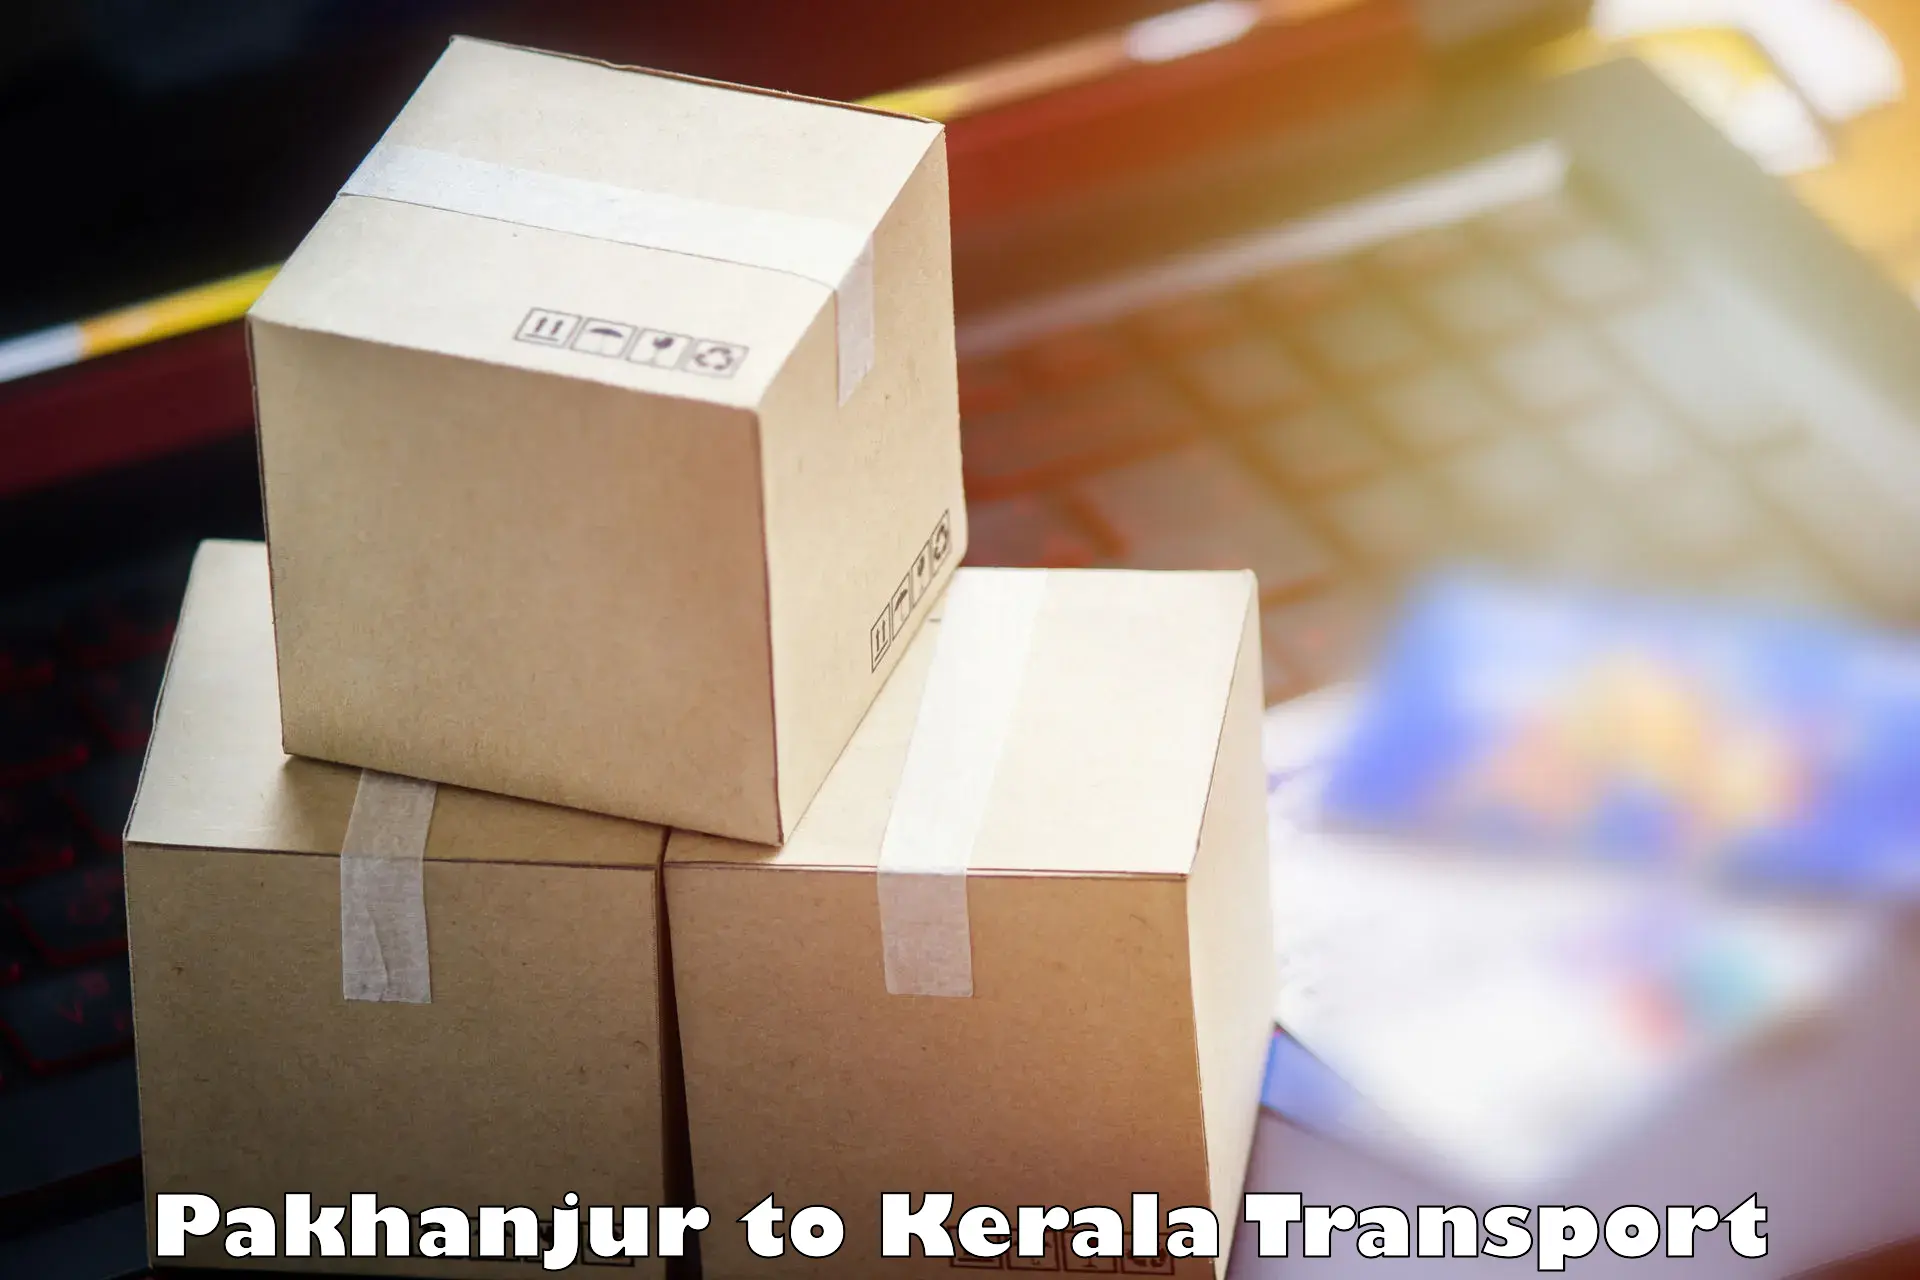 Air cargo transport services Pakhanjur to Kerala University Thiruvananthapuram